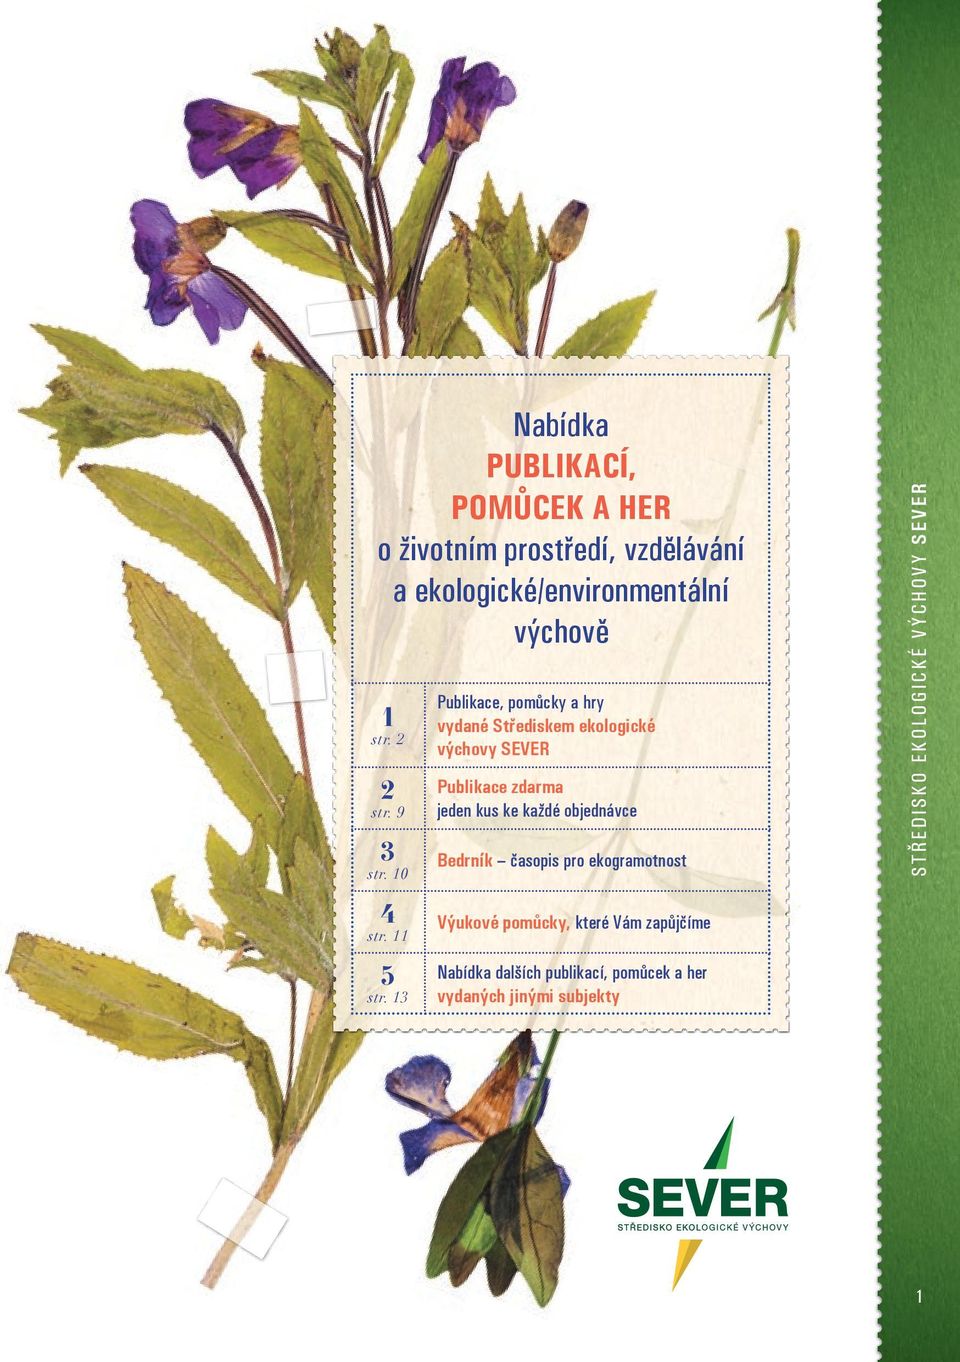 13 Publikace, pomůcky a hry vydané Střediskem ekologické výchovy SEVER Publikace zdarma jeden kus ke